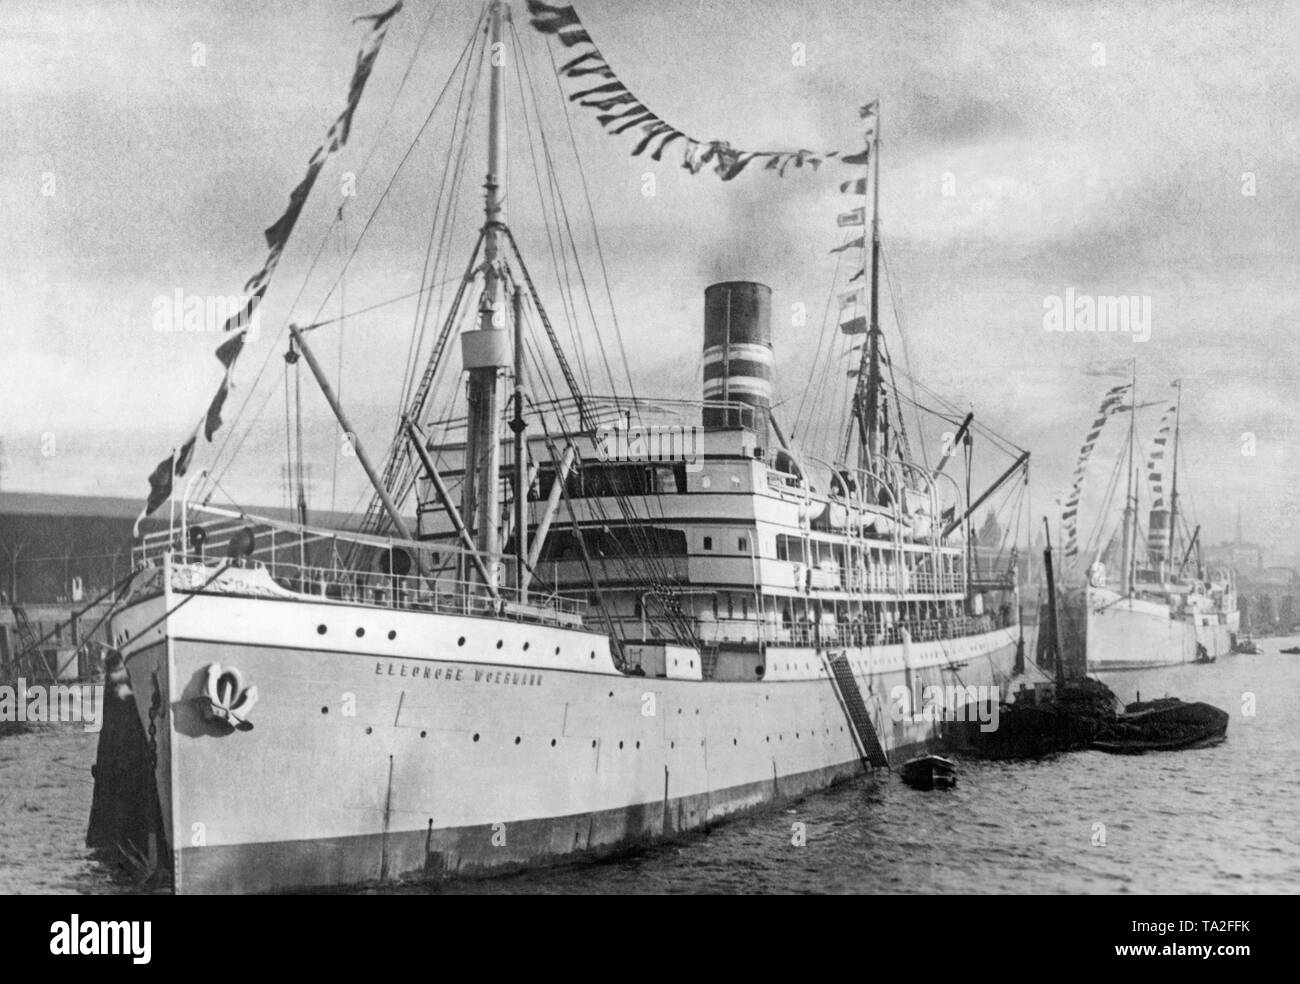 Il passeggero e del carico della nave 'Eleonore Woermann', che operavano su rotte a West African colonie tedesche, è ancorata in un porto. Nel 1915 la 'Eleonore Woermann' fu affondato da un incrociatore britannico. Foto Stock